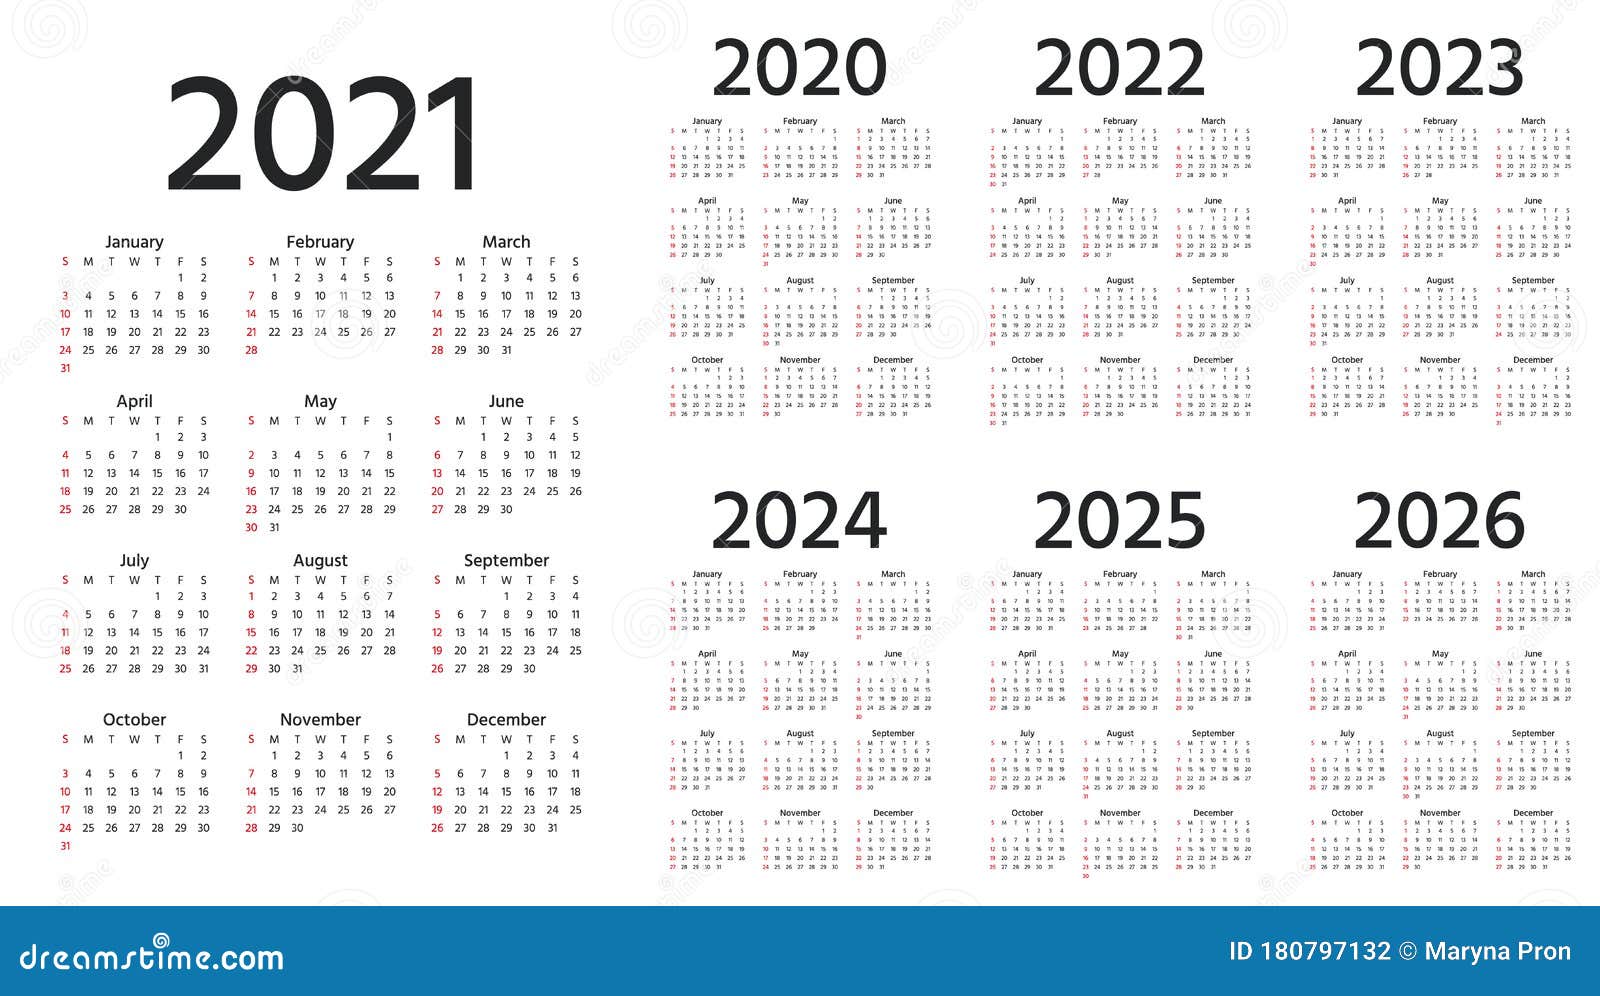 2026 по месяцам. Календарь 2022 2023 2024. Календарь на 4 года 2021 2022 2023 2024. Календарь 2022-2023 год. Календарь на 2021-2025 года.